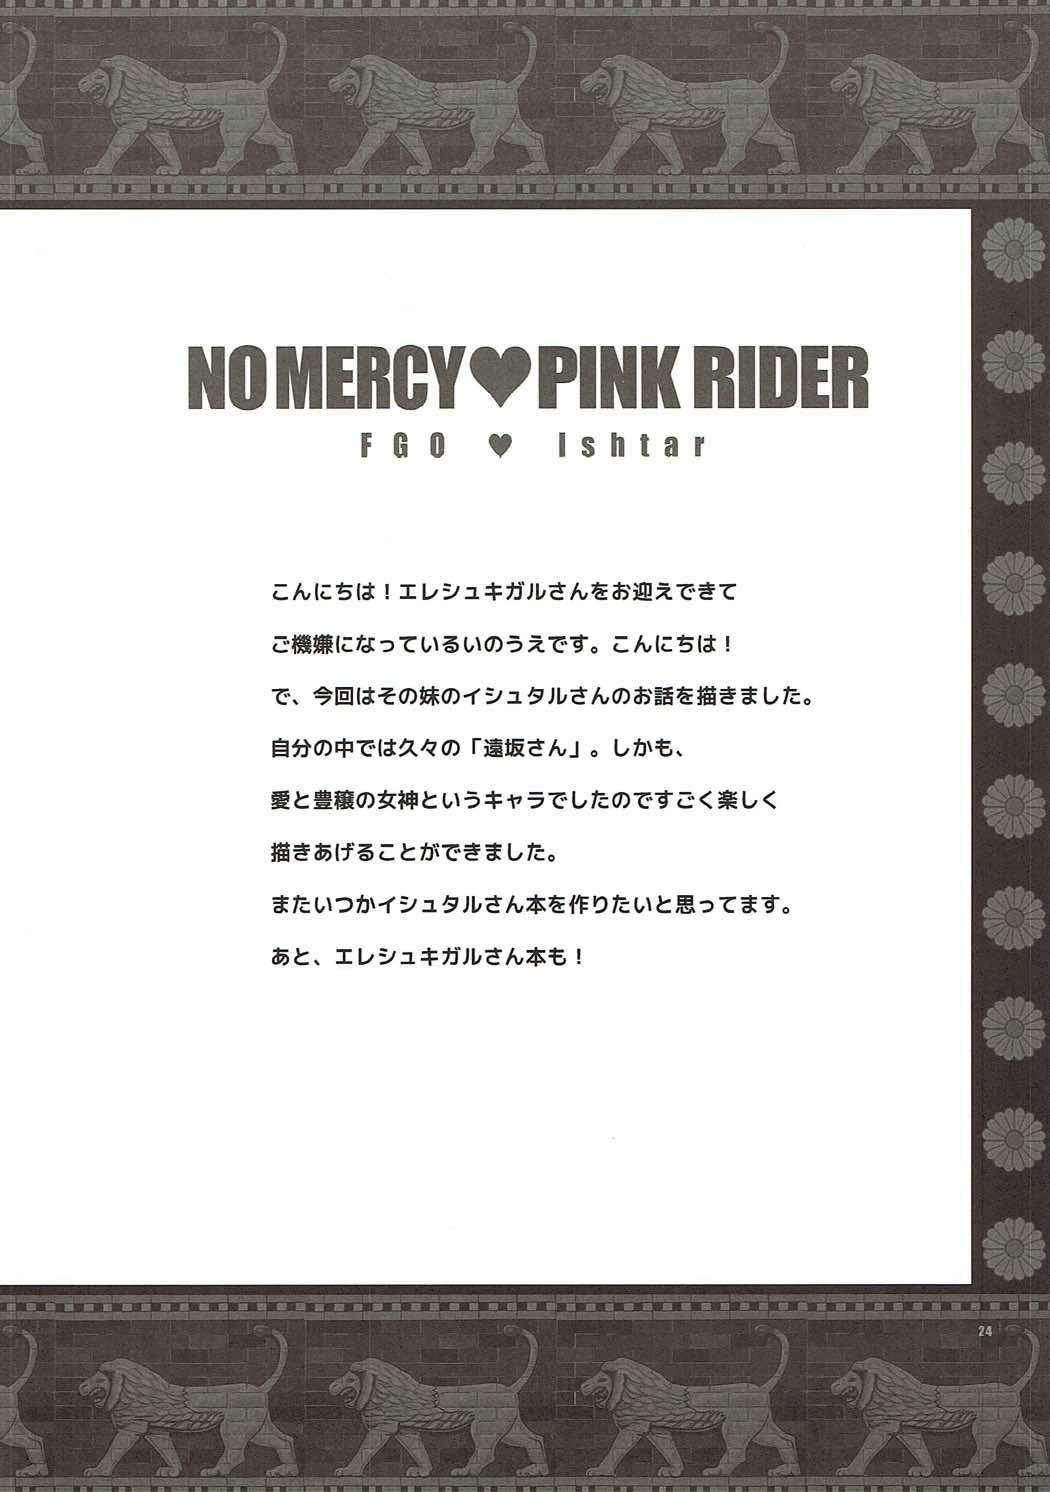 Yousha no Nai Pink Rider - No Mercy Pink Rider 22